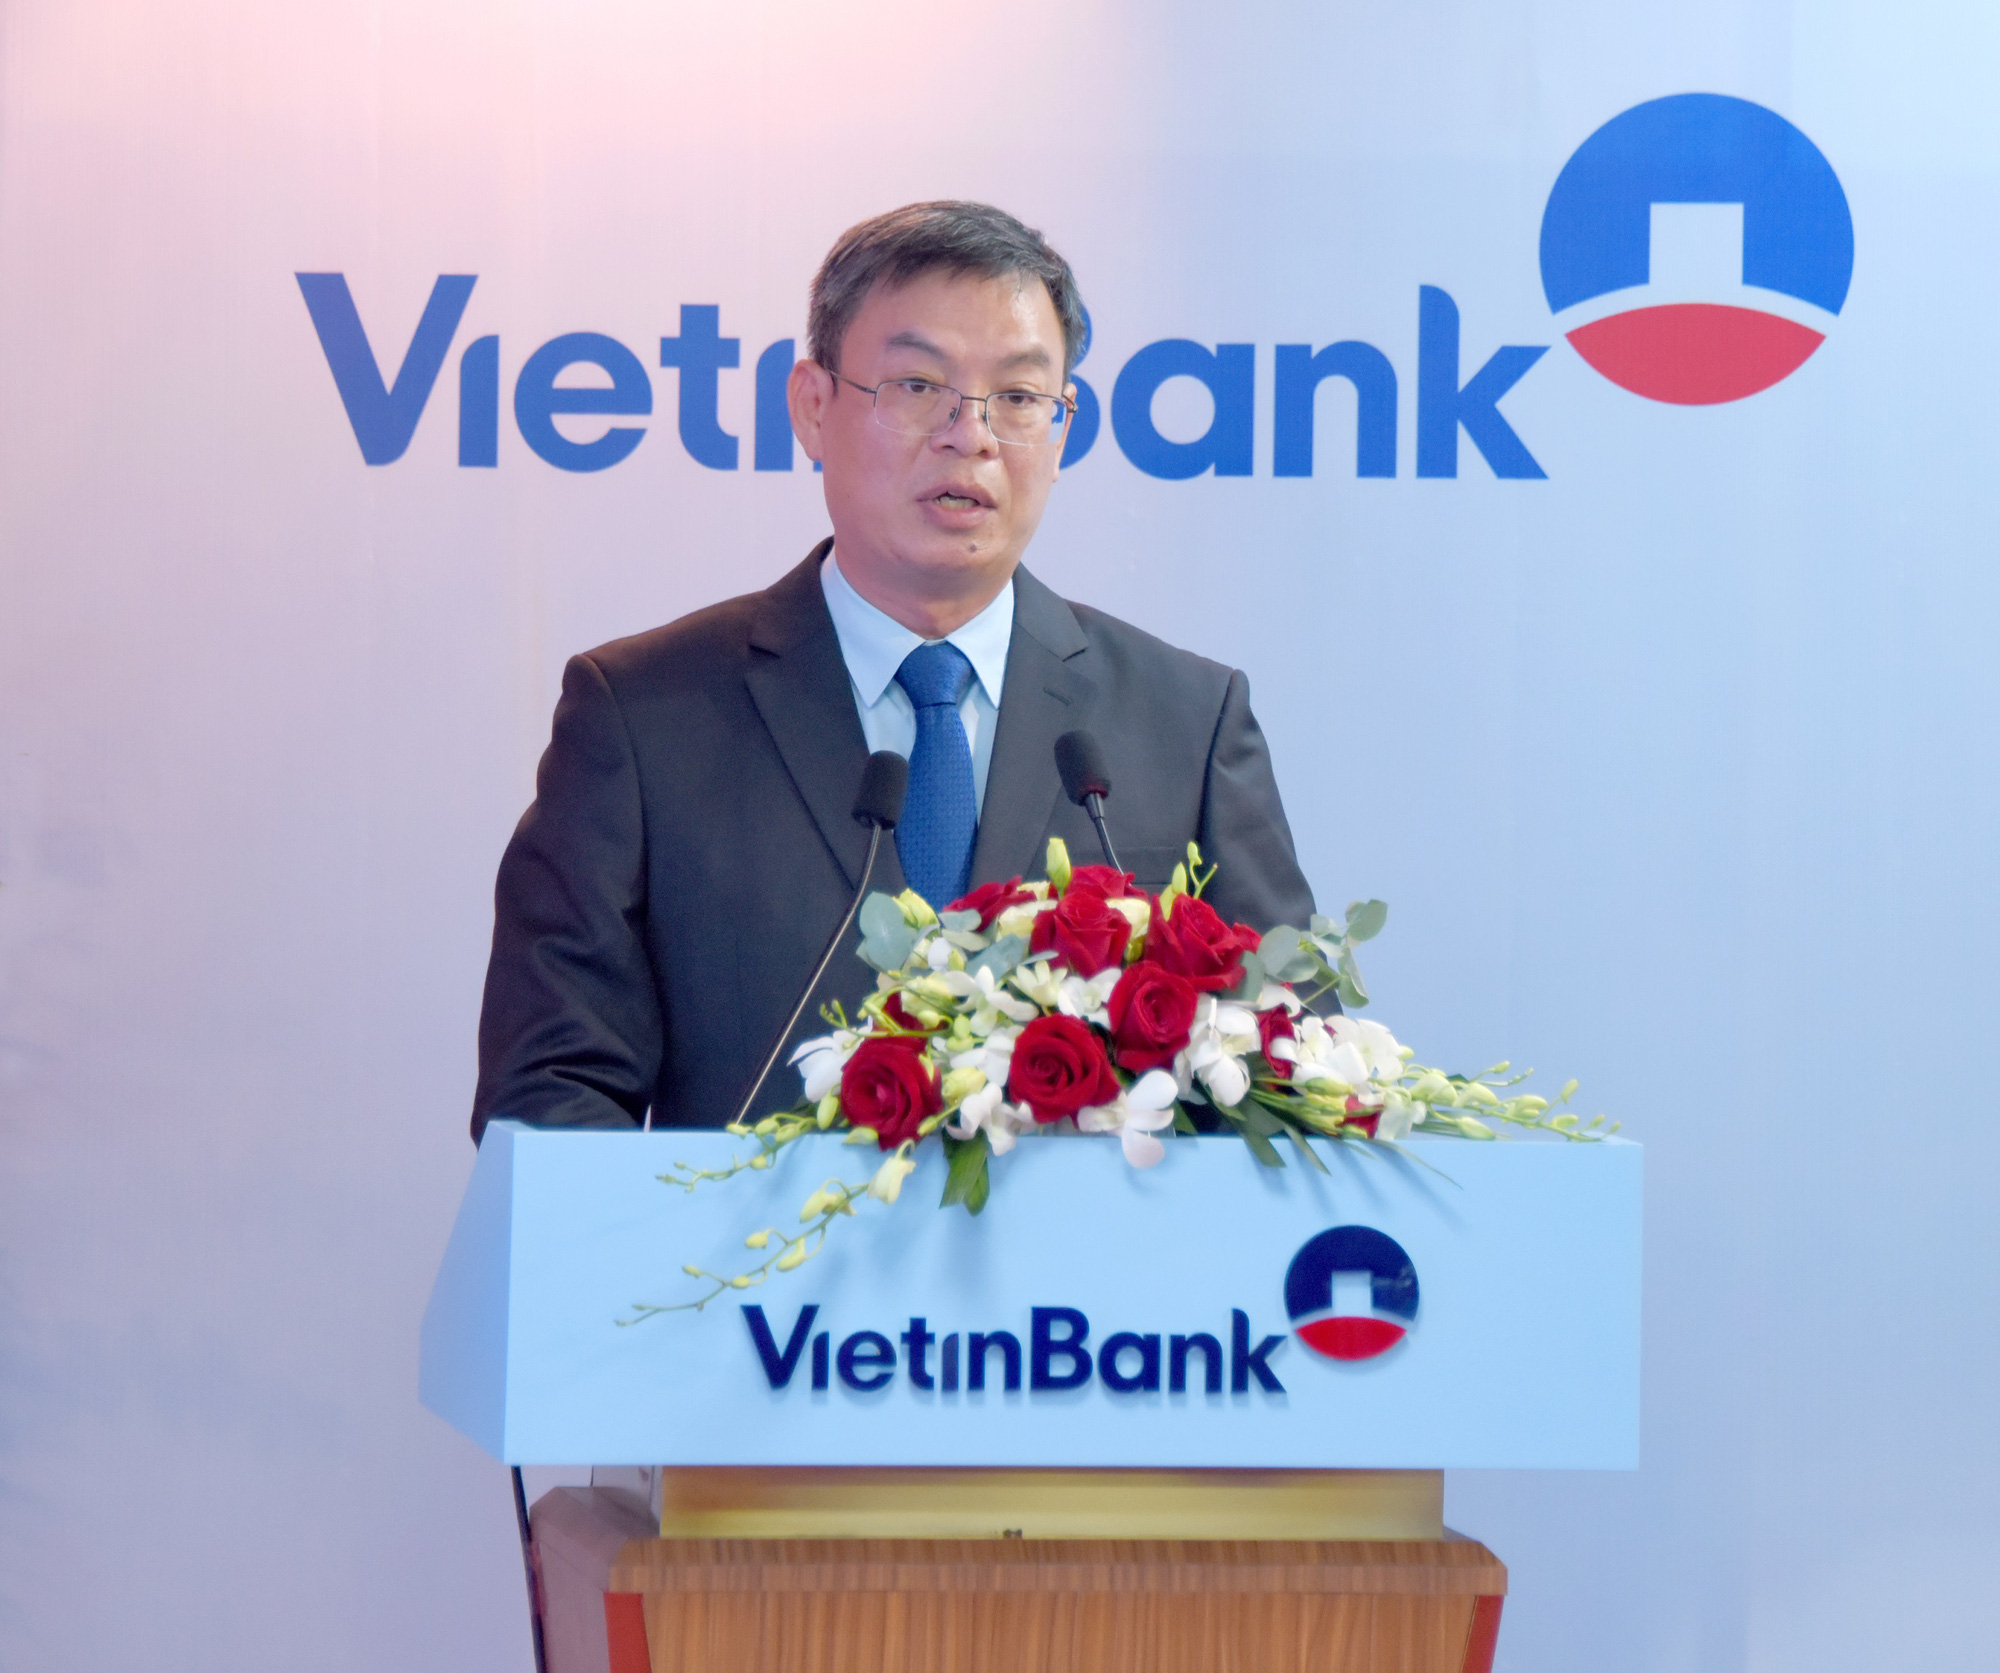 Hình ảnh ông Trần Minh Bình, nguyên là tổng giám đốc tại Vietinbank